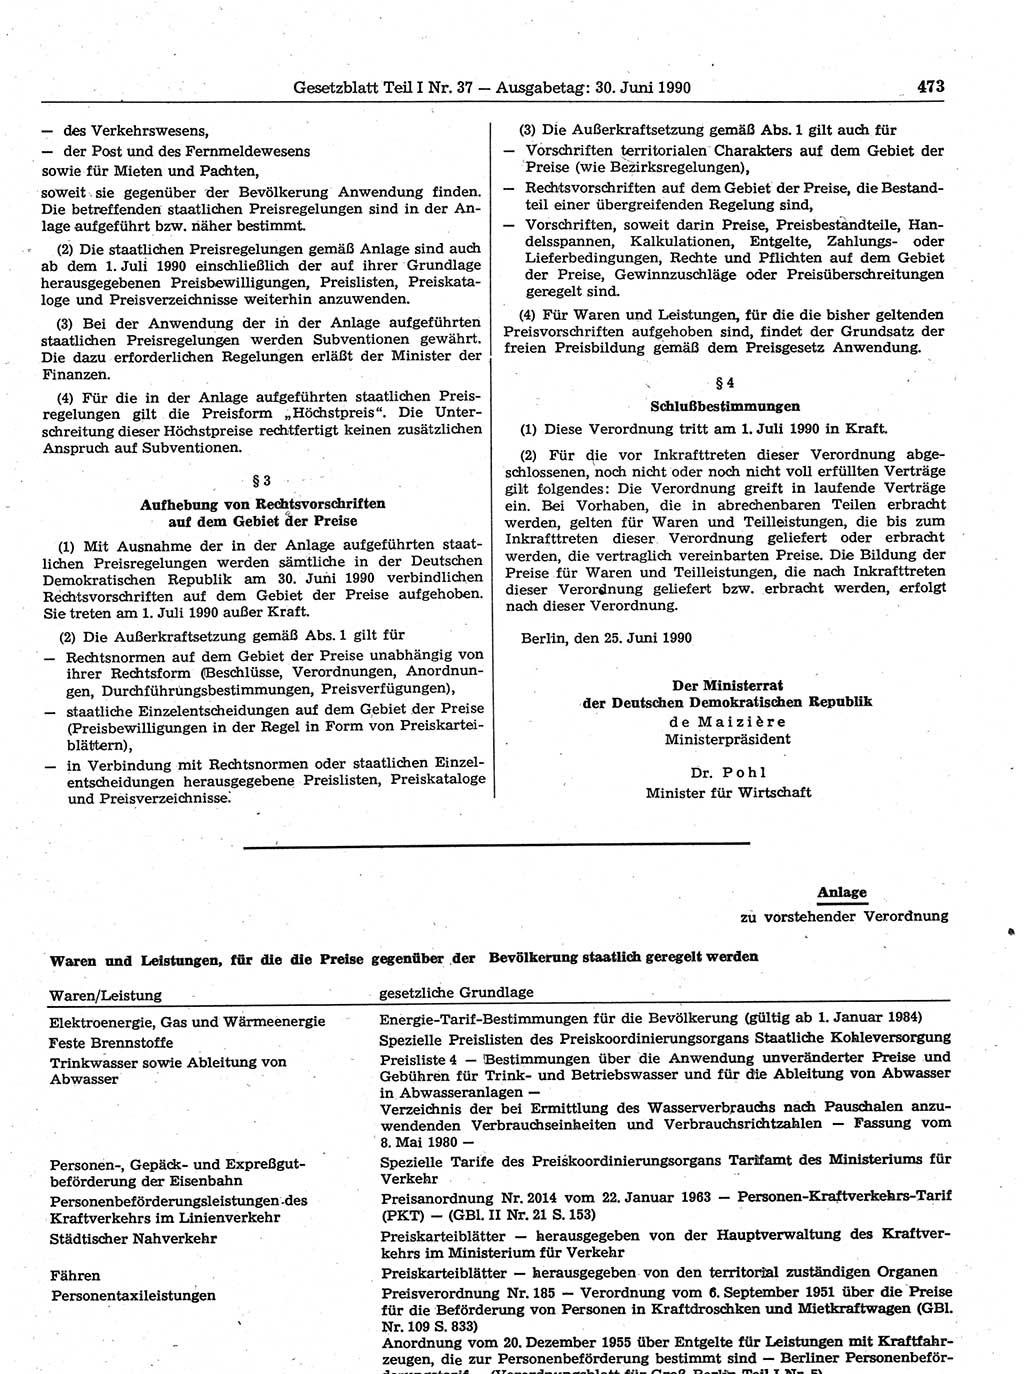 Gesetzblatt (GBl.) der Deutschen Demokratischen Republik (DDR) Teil Ⅰ 1990, Seite 473 (GBl. DDR Ⅰ 1990, S. 473)